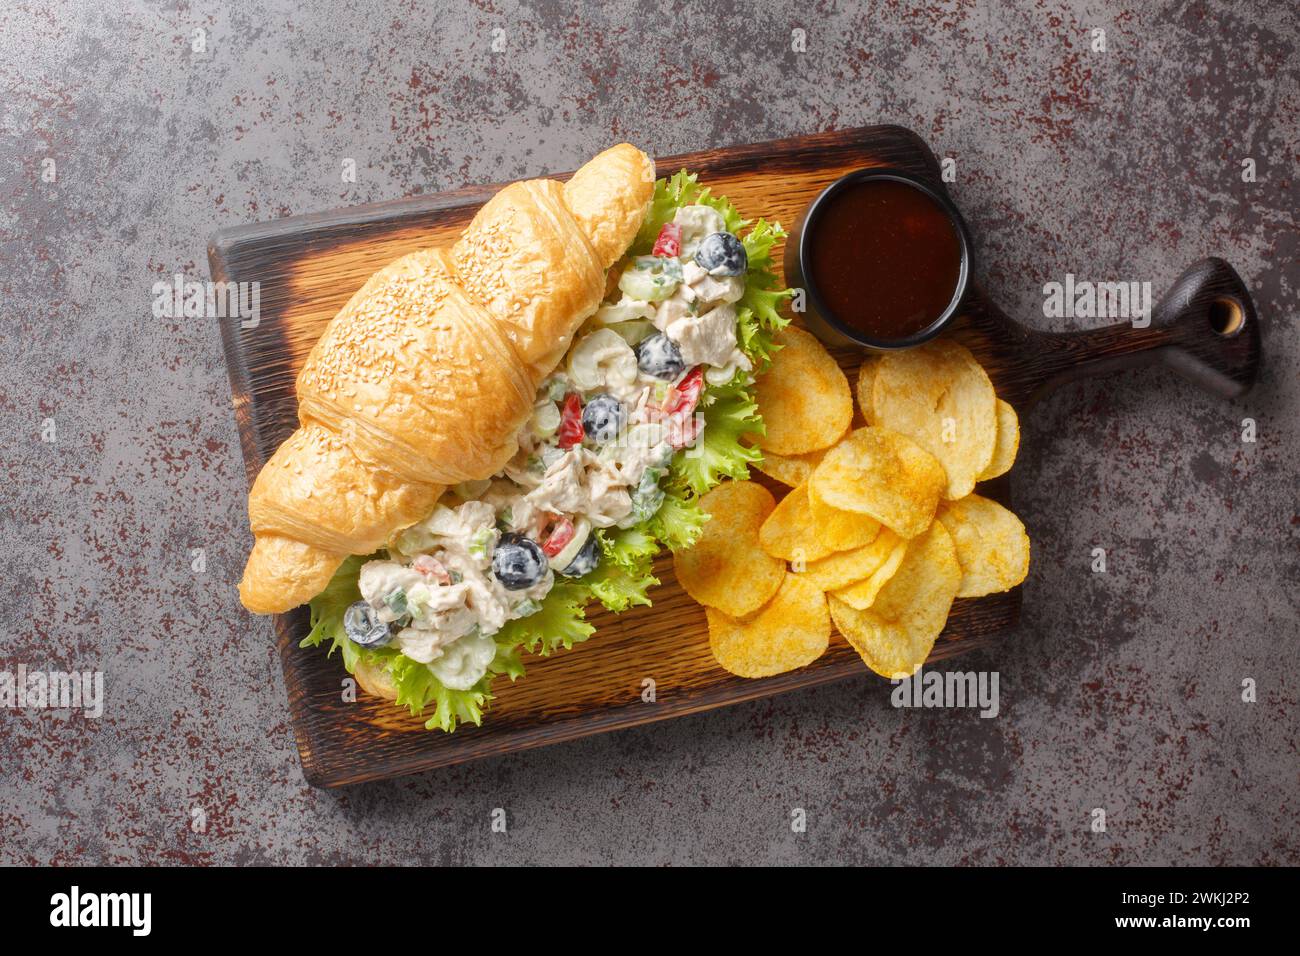 Salade de poulet sain maison sandwich croissant avec croustilles gros plan sur une planche de bois sur la table. Vue horizontale de dessus Banque D'Images